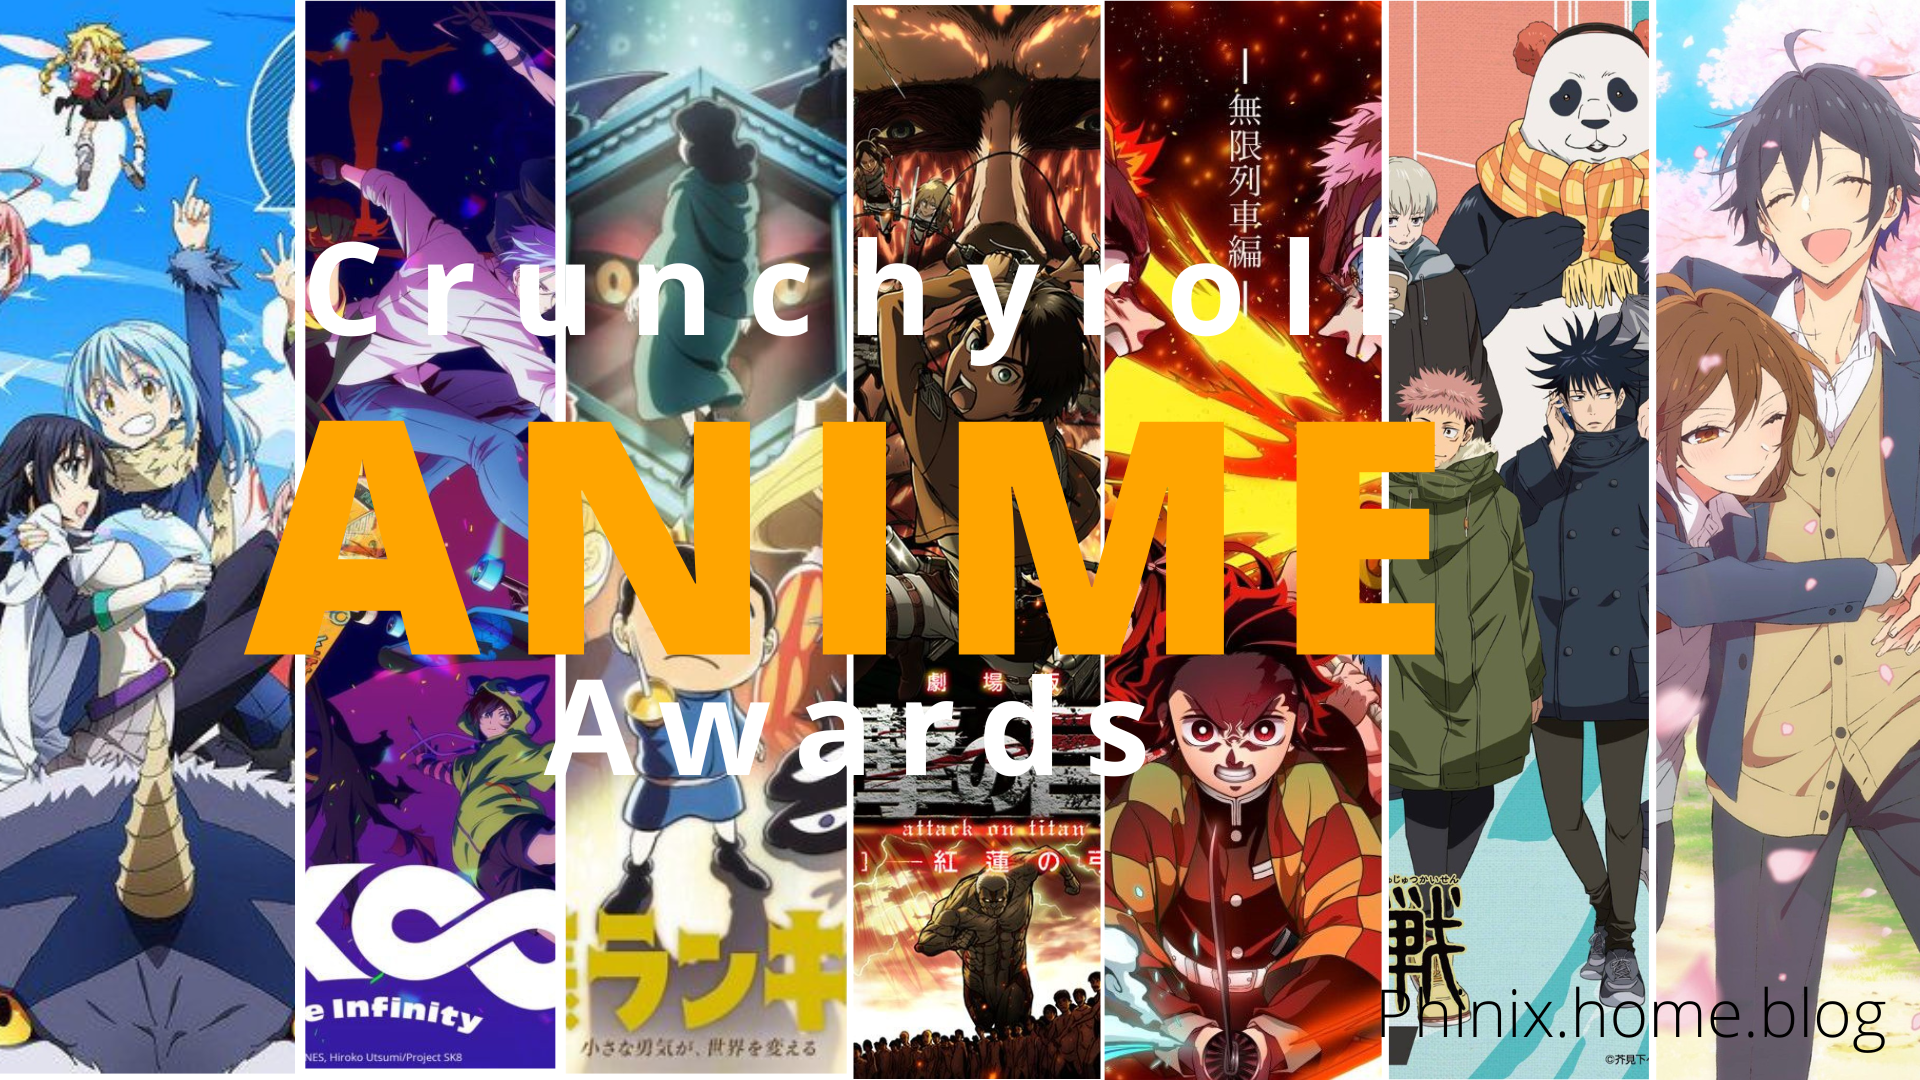 Crunchyroll Announces 5th Anime Awards Winners!